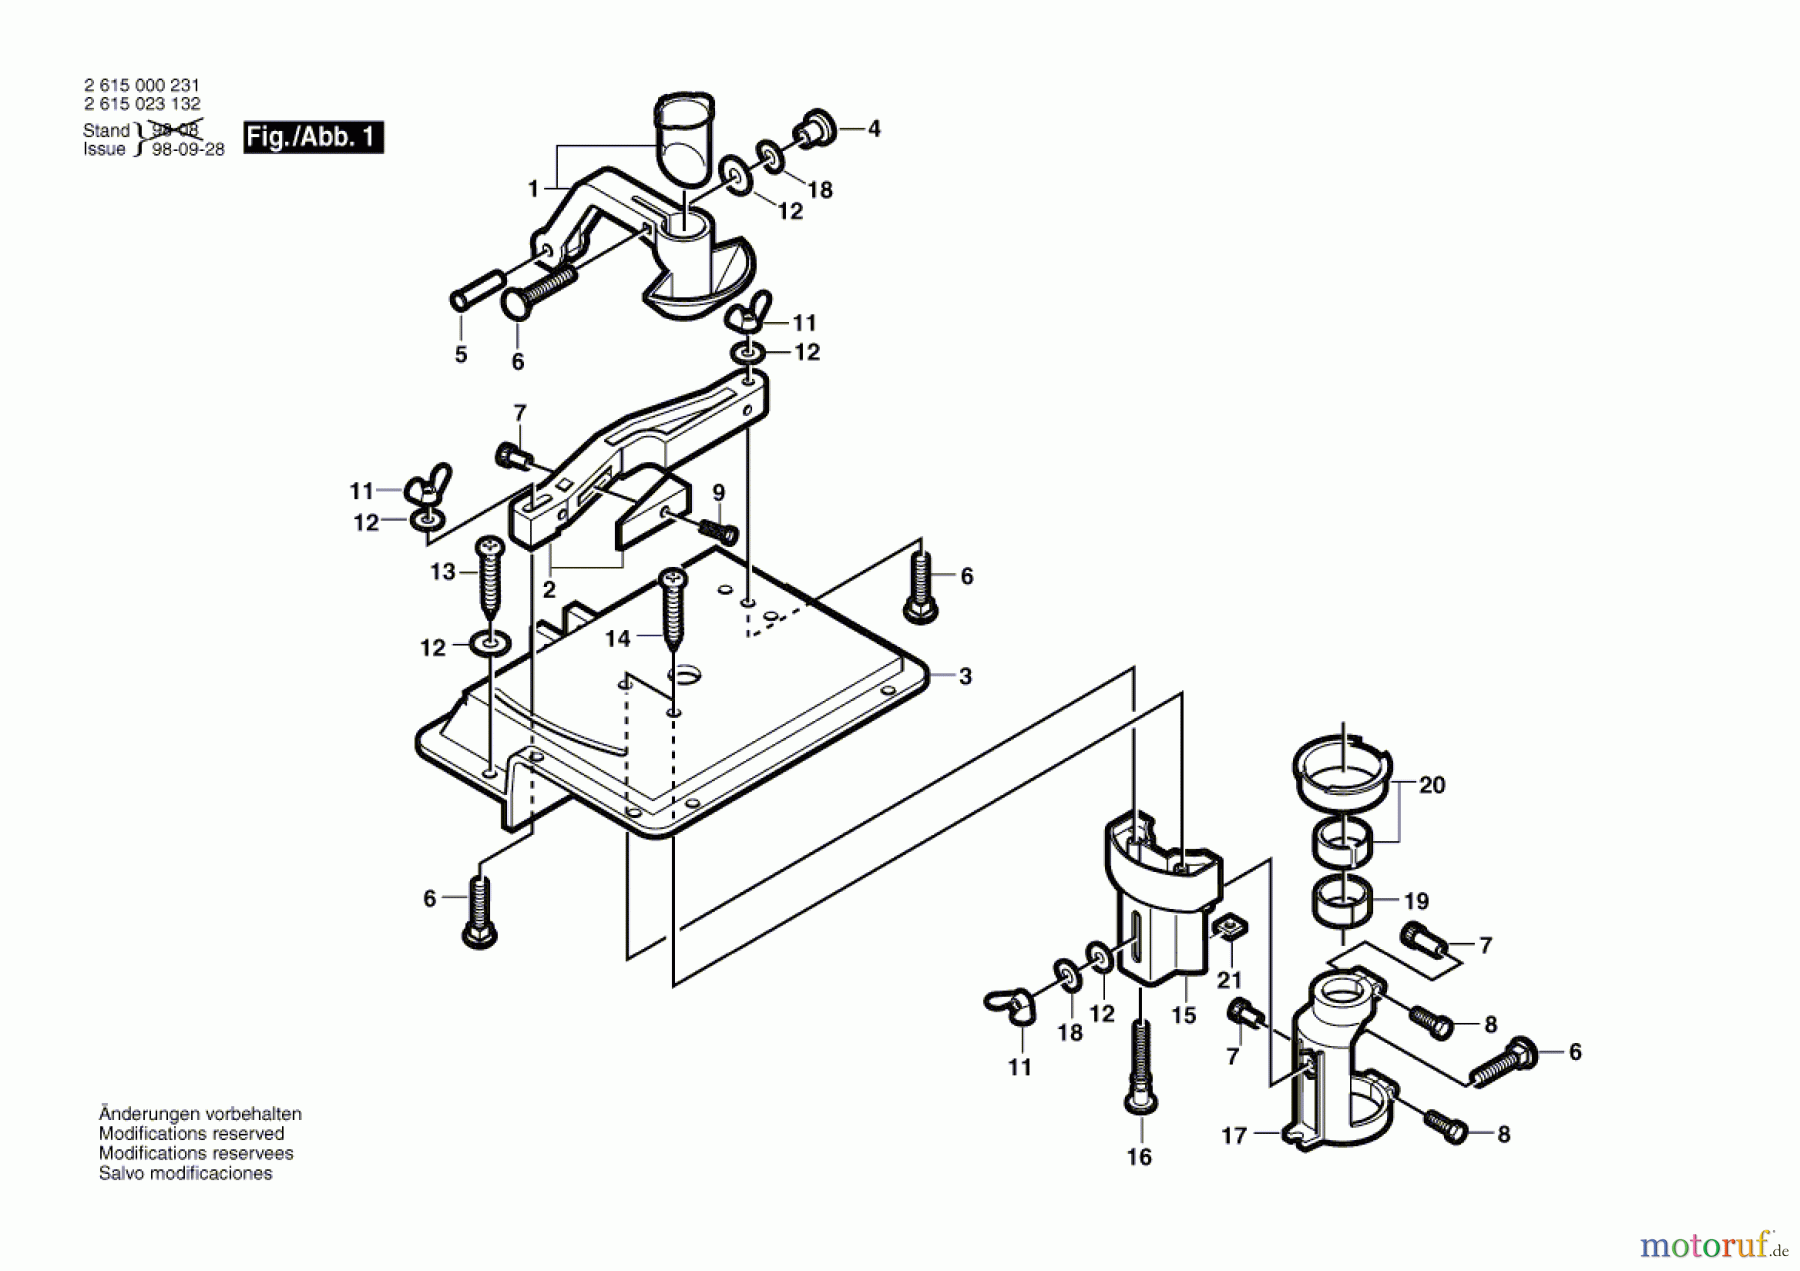  Bosch Werkzeug Bauteil ---- Seite 1